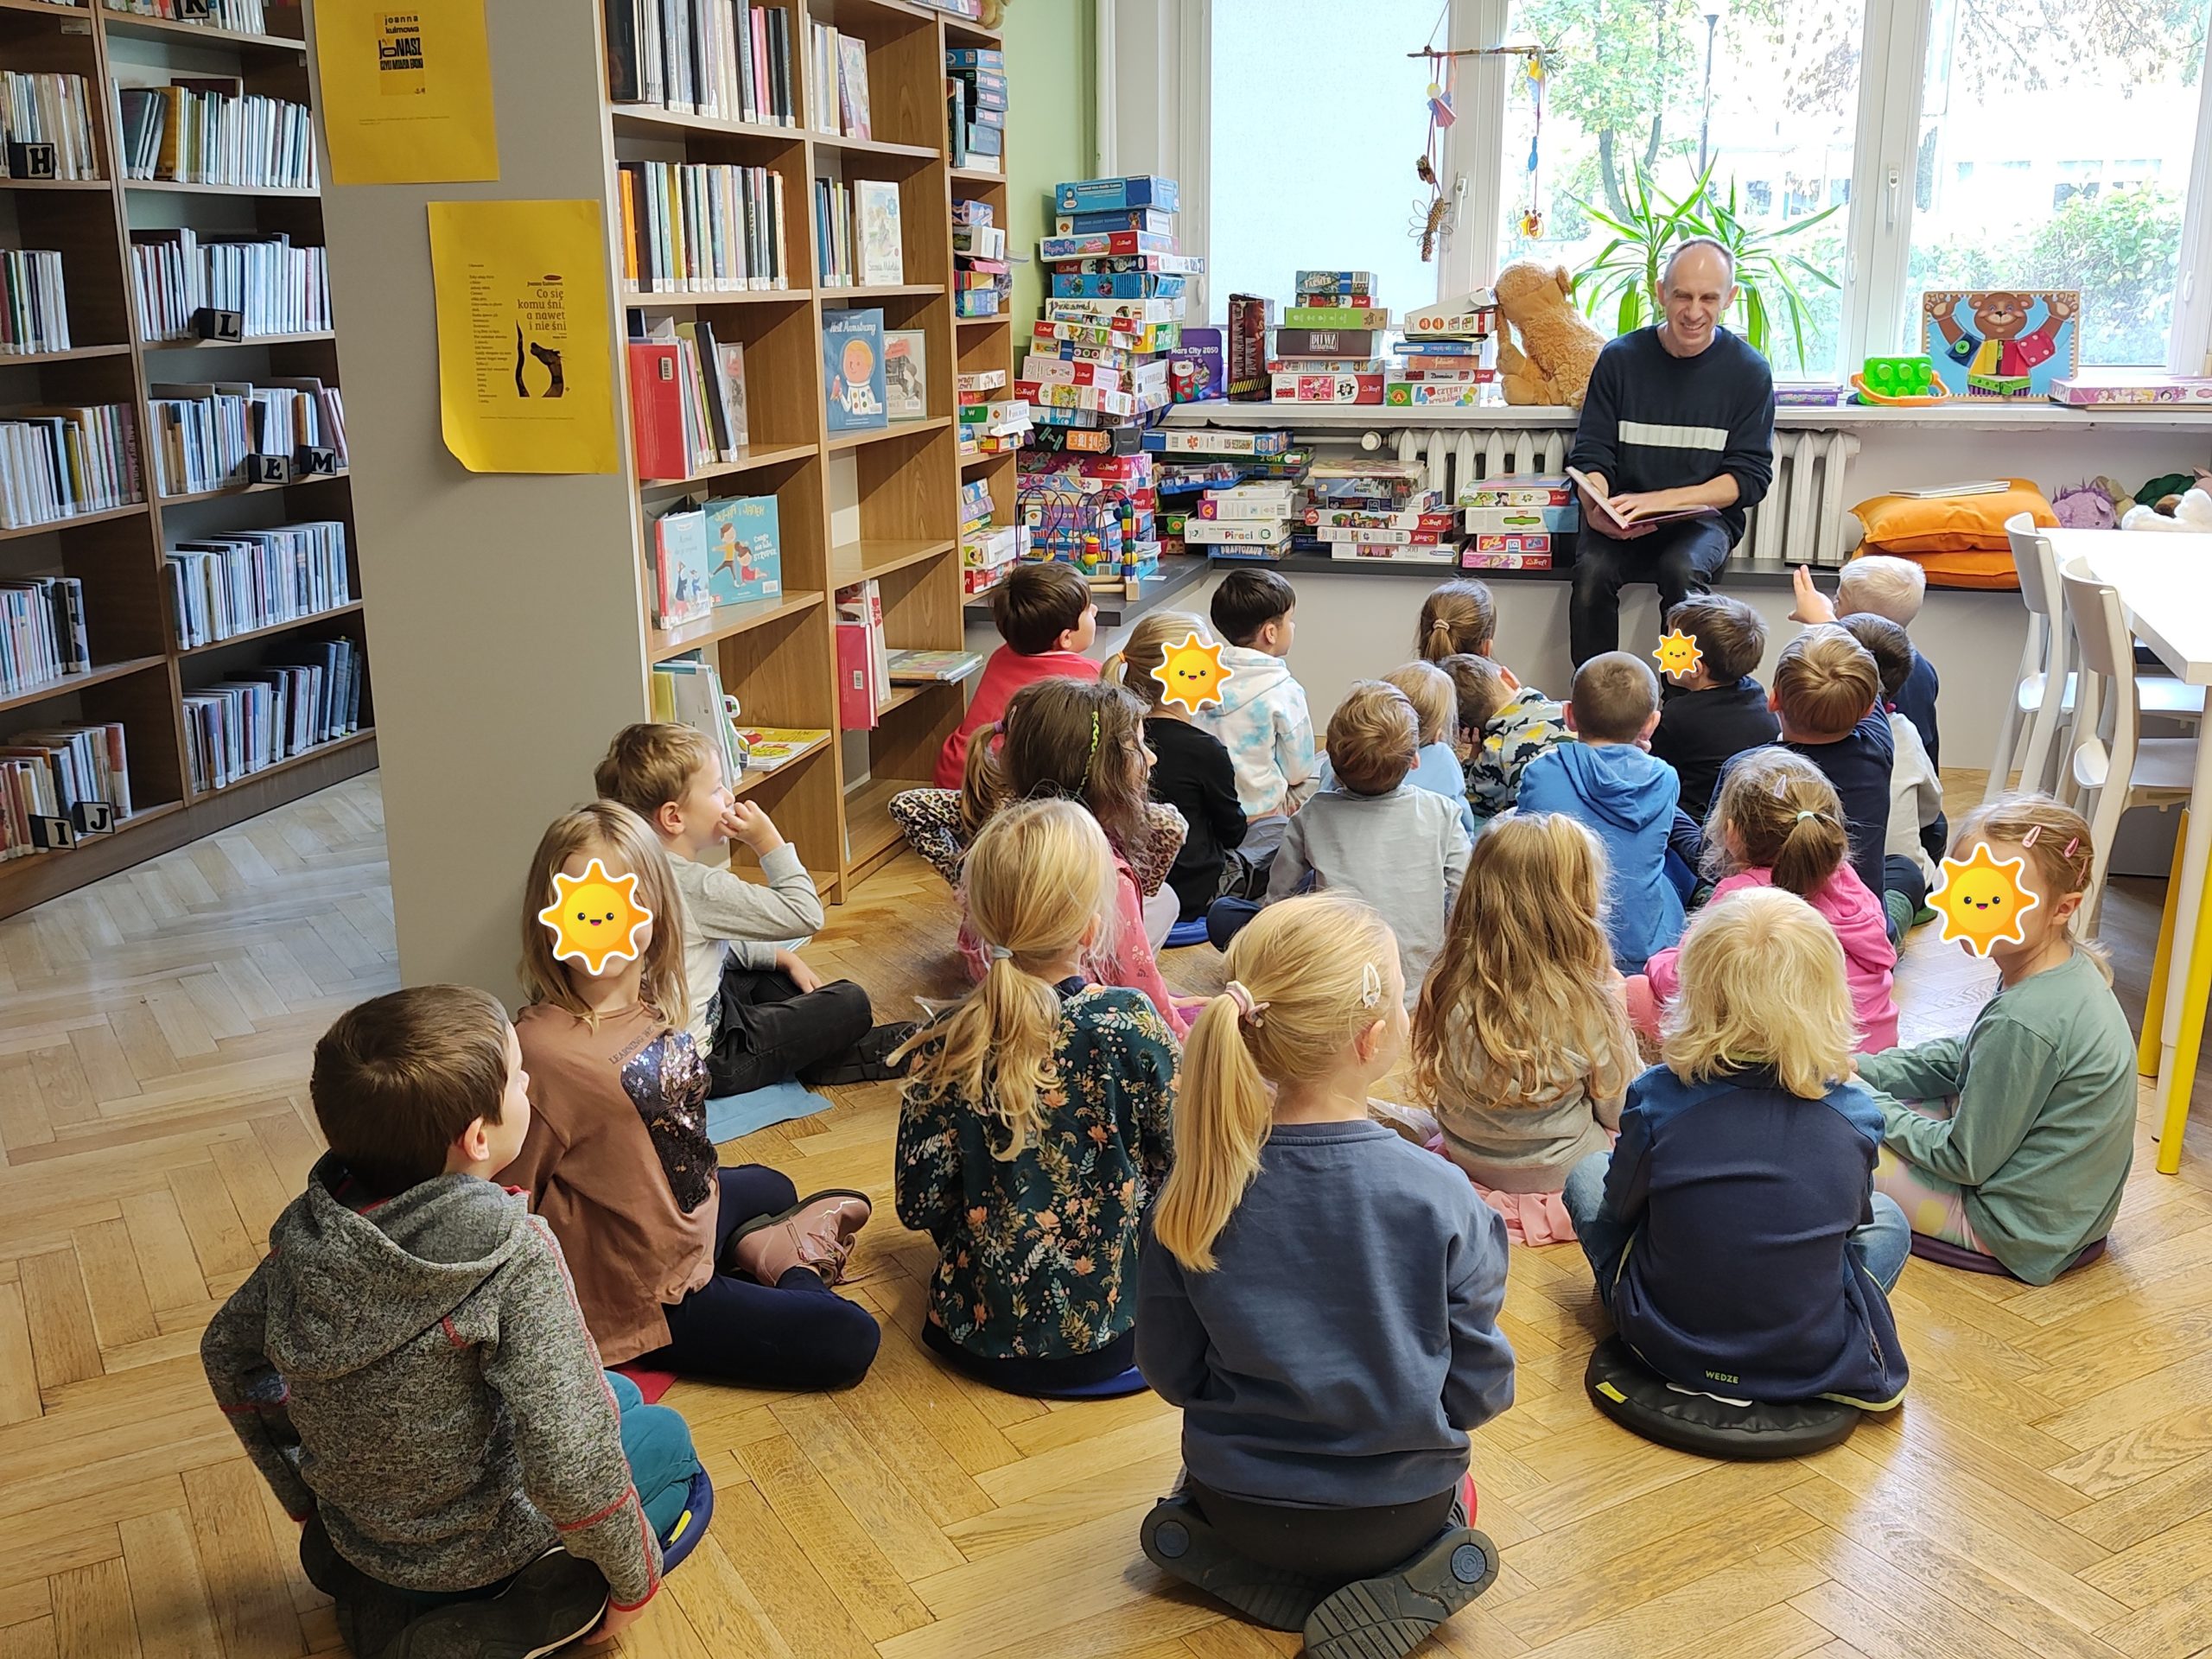 W trakcie czytania opowiadań zawsze wywiąże się jakaś ciekawa rozmowa. Dzieci podczas dyskusji o książkach i pracy w bibliotece.